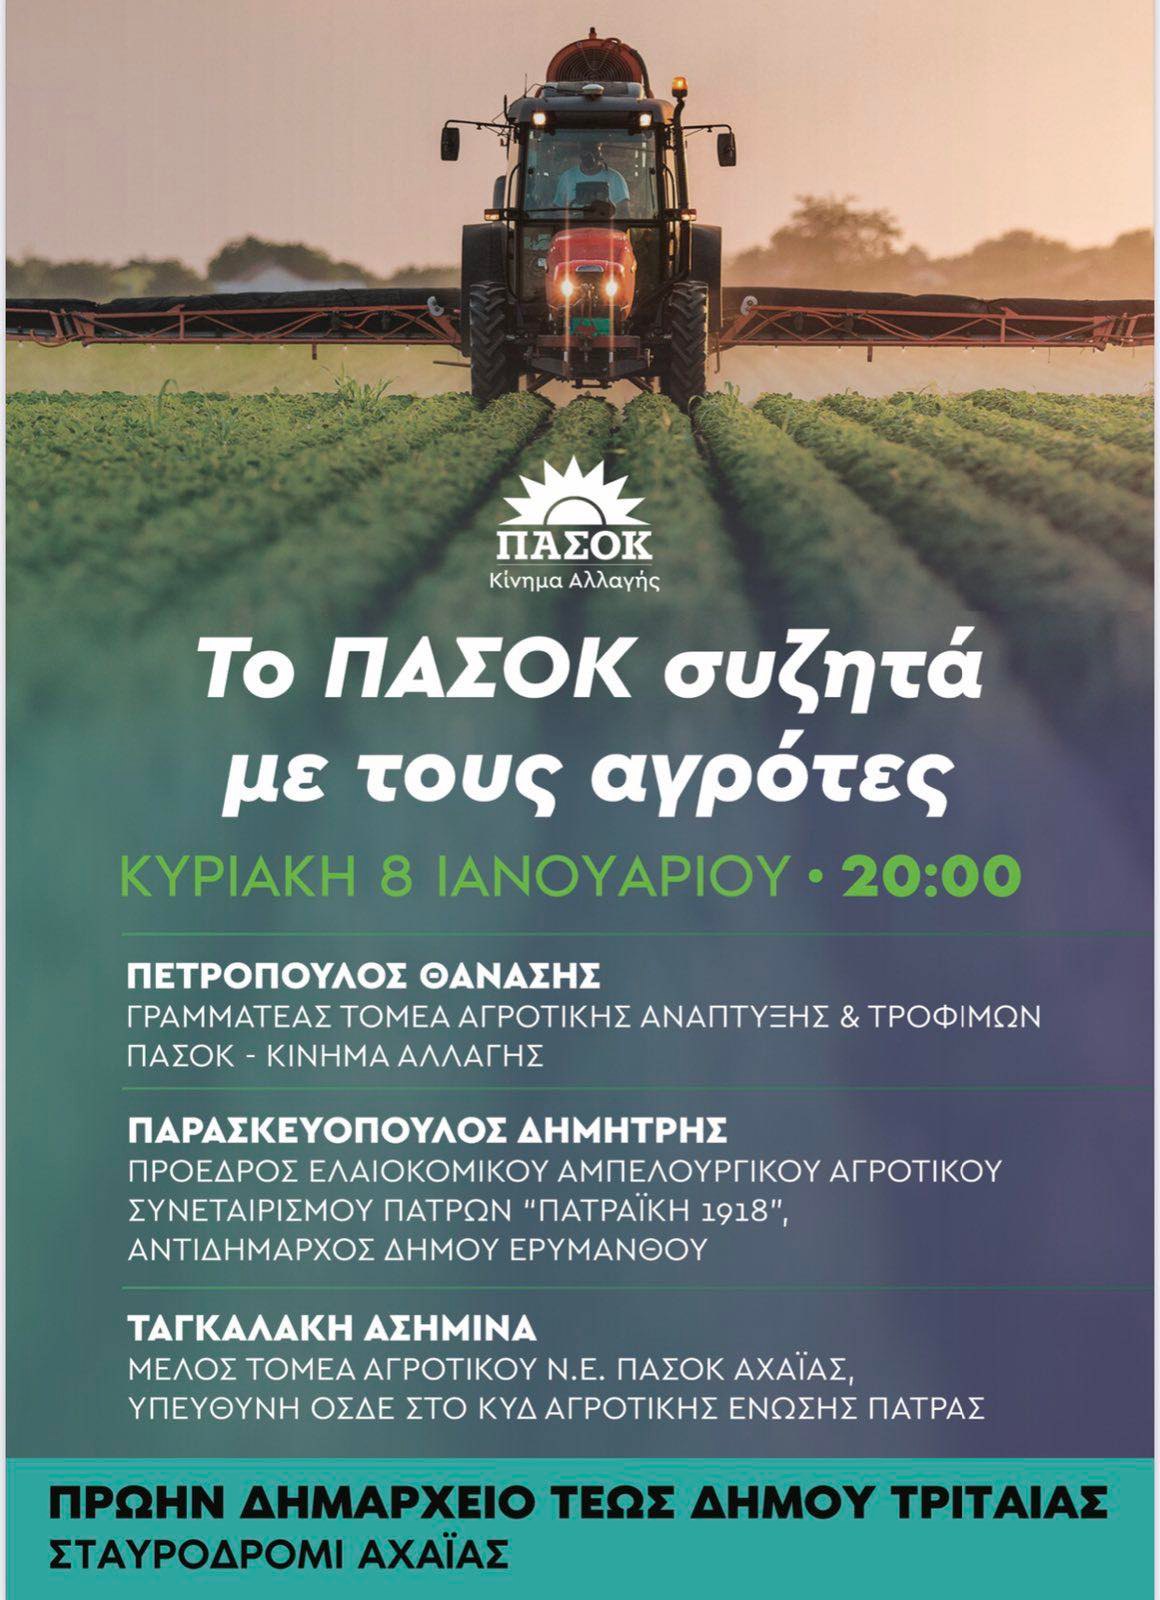 Εκδήλωση του ΠΑΣΟΚ στο Σταυροδρόμι απόψε για τους αγρότες